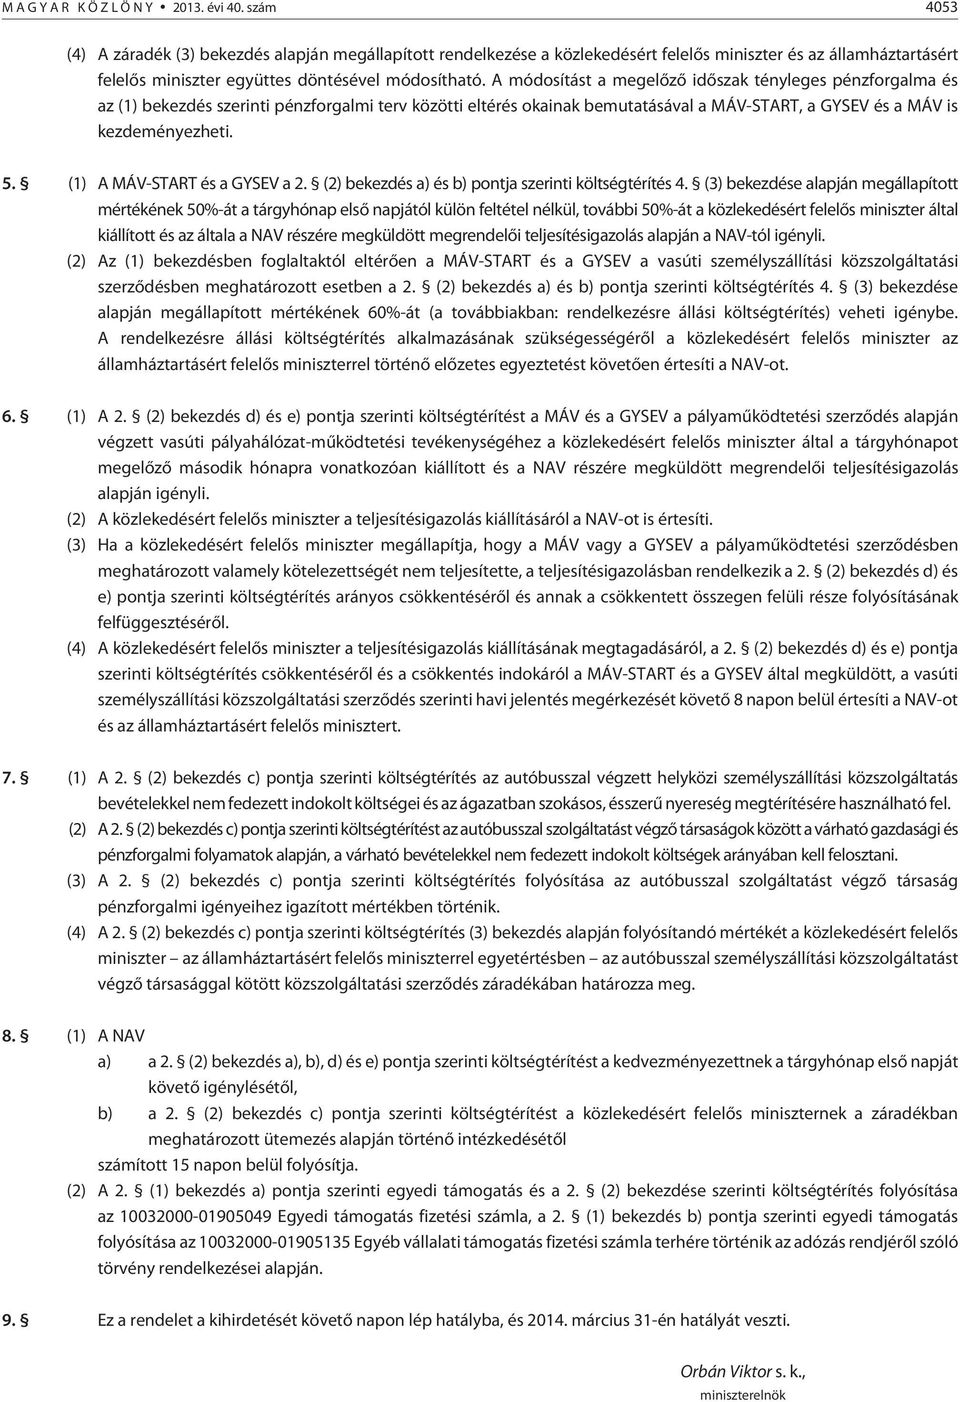 A módosítást a megelõzõ idõszak tényleges pénzforgalma és az (1) bekezdés szerinti pénzforgalmi terv közötti eltérés okainak bemutatásával a MÁV-START, a GYSEV és a MÁV is kezdeményezheti. 5.